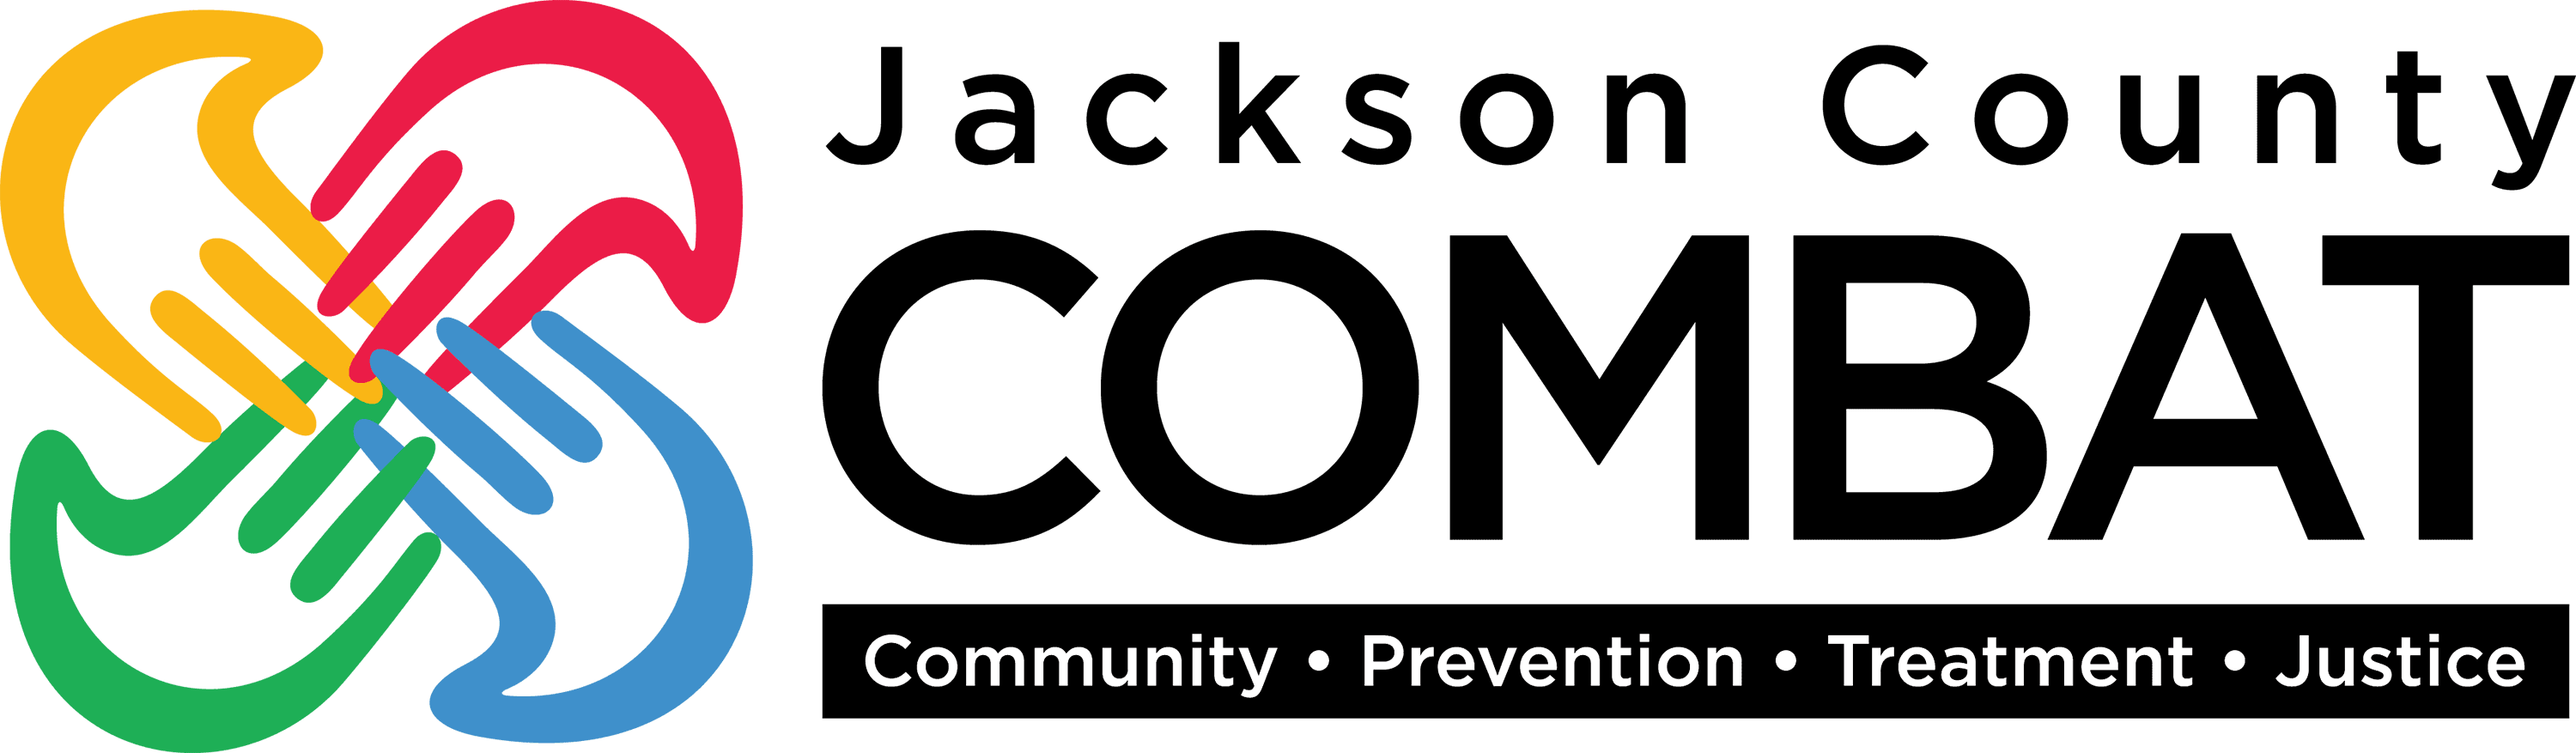 Jackson County COMBAT